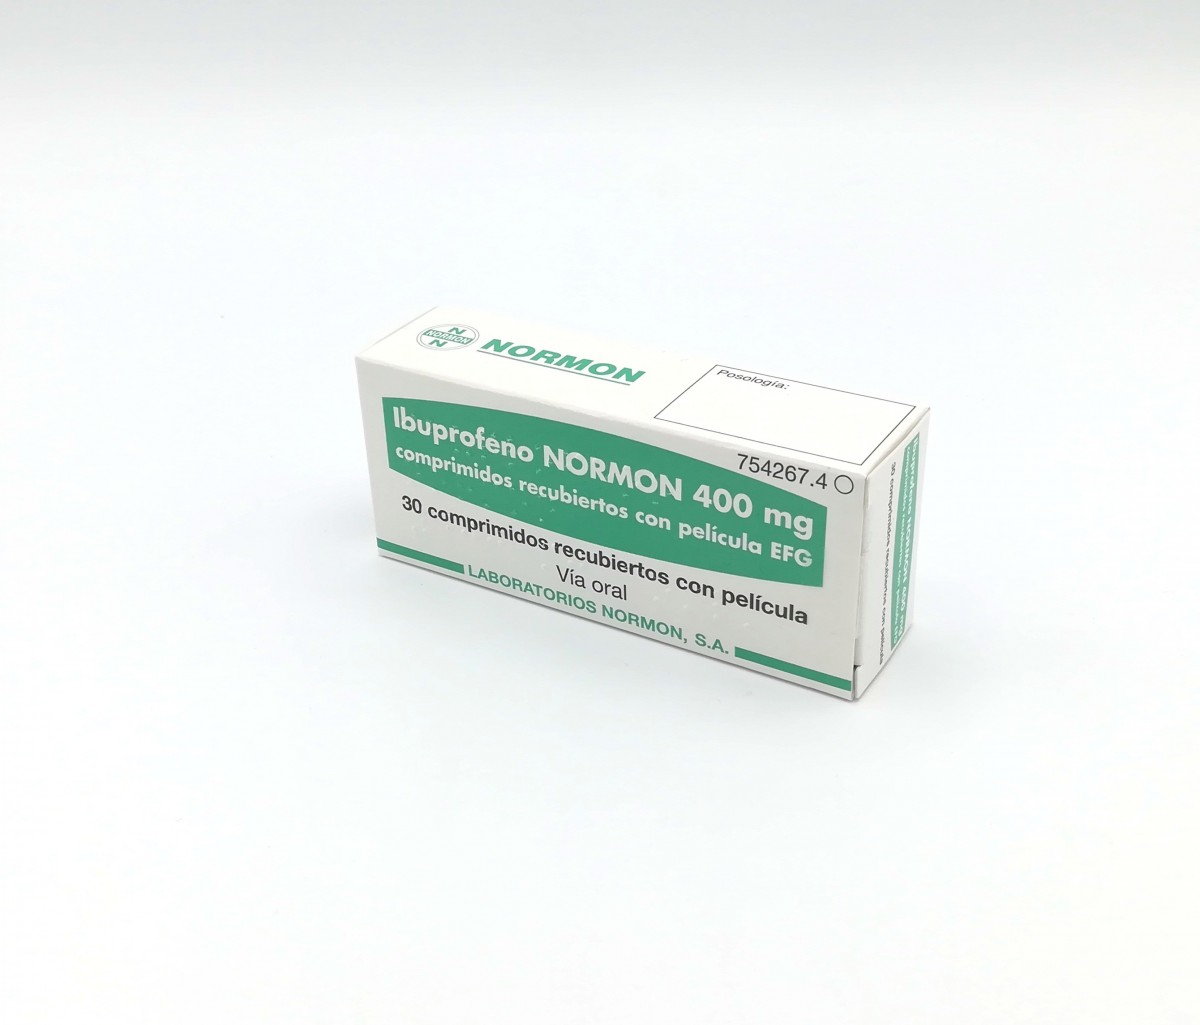 IBUPROFENO NORMON 400 mg COMPRIMIDOS RECUBIERTOS CON PELICULA EFG , 30 comprimidos fotografía del envase.